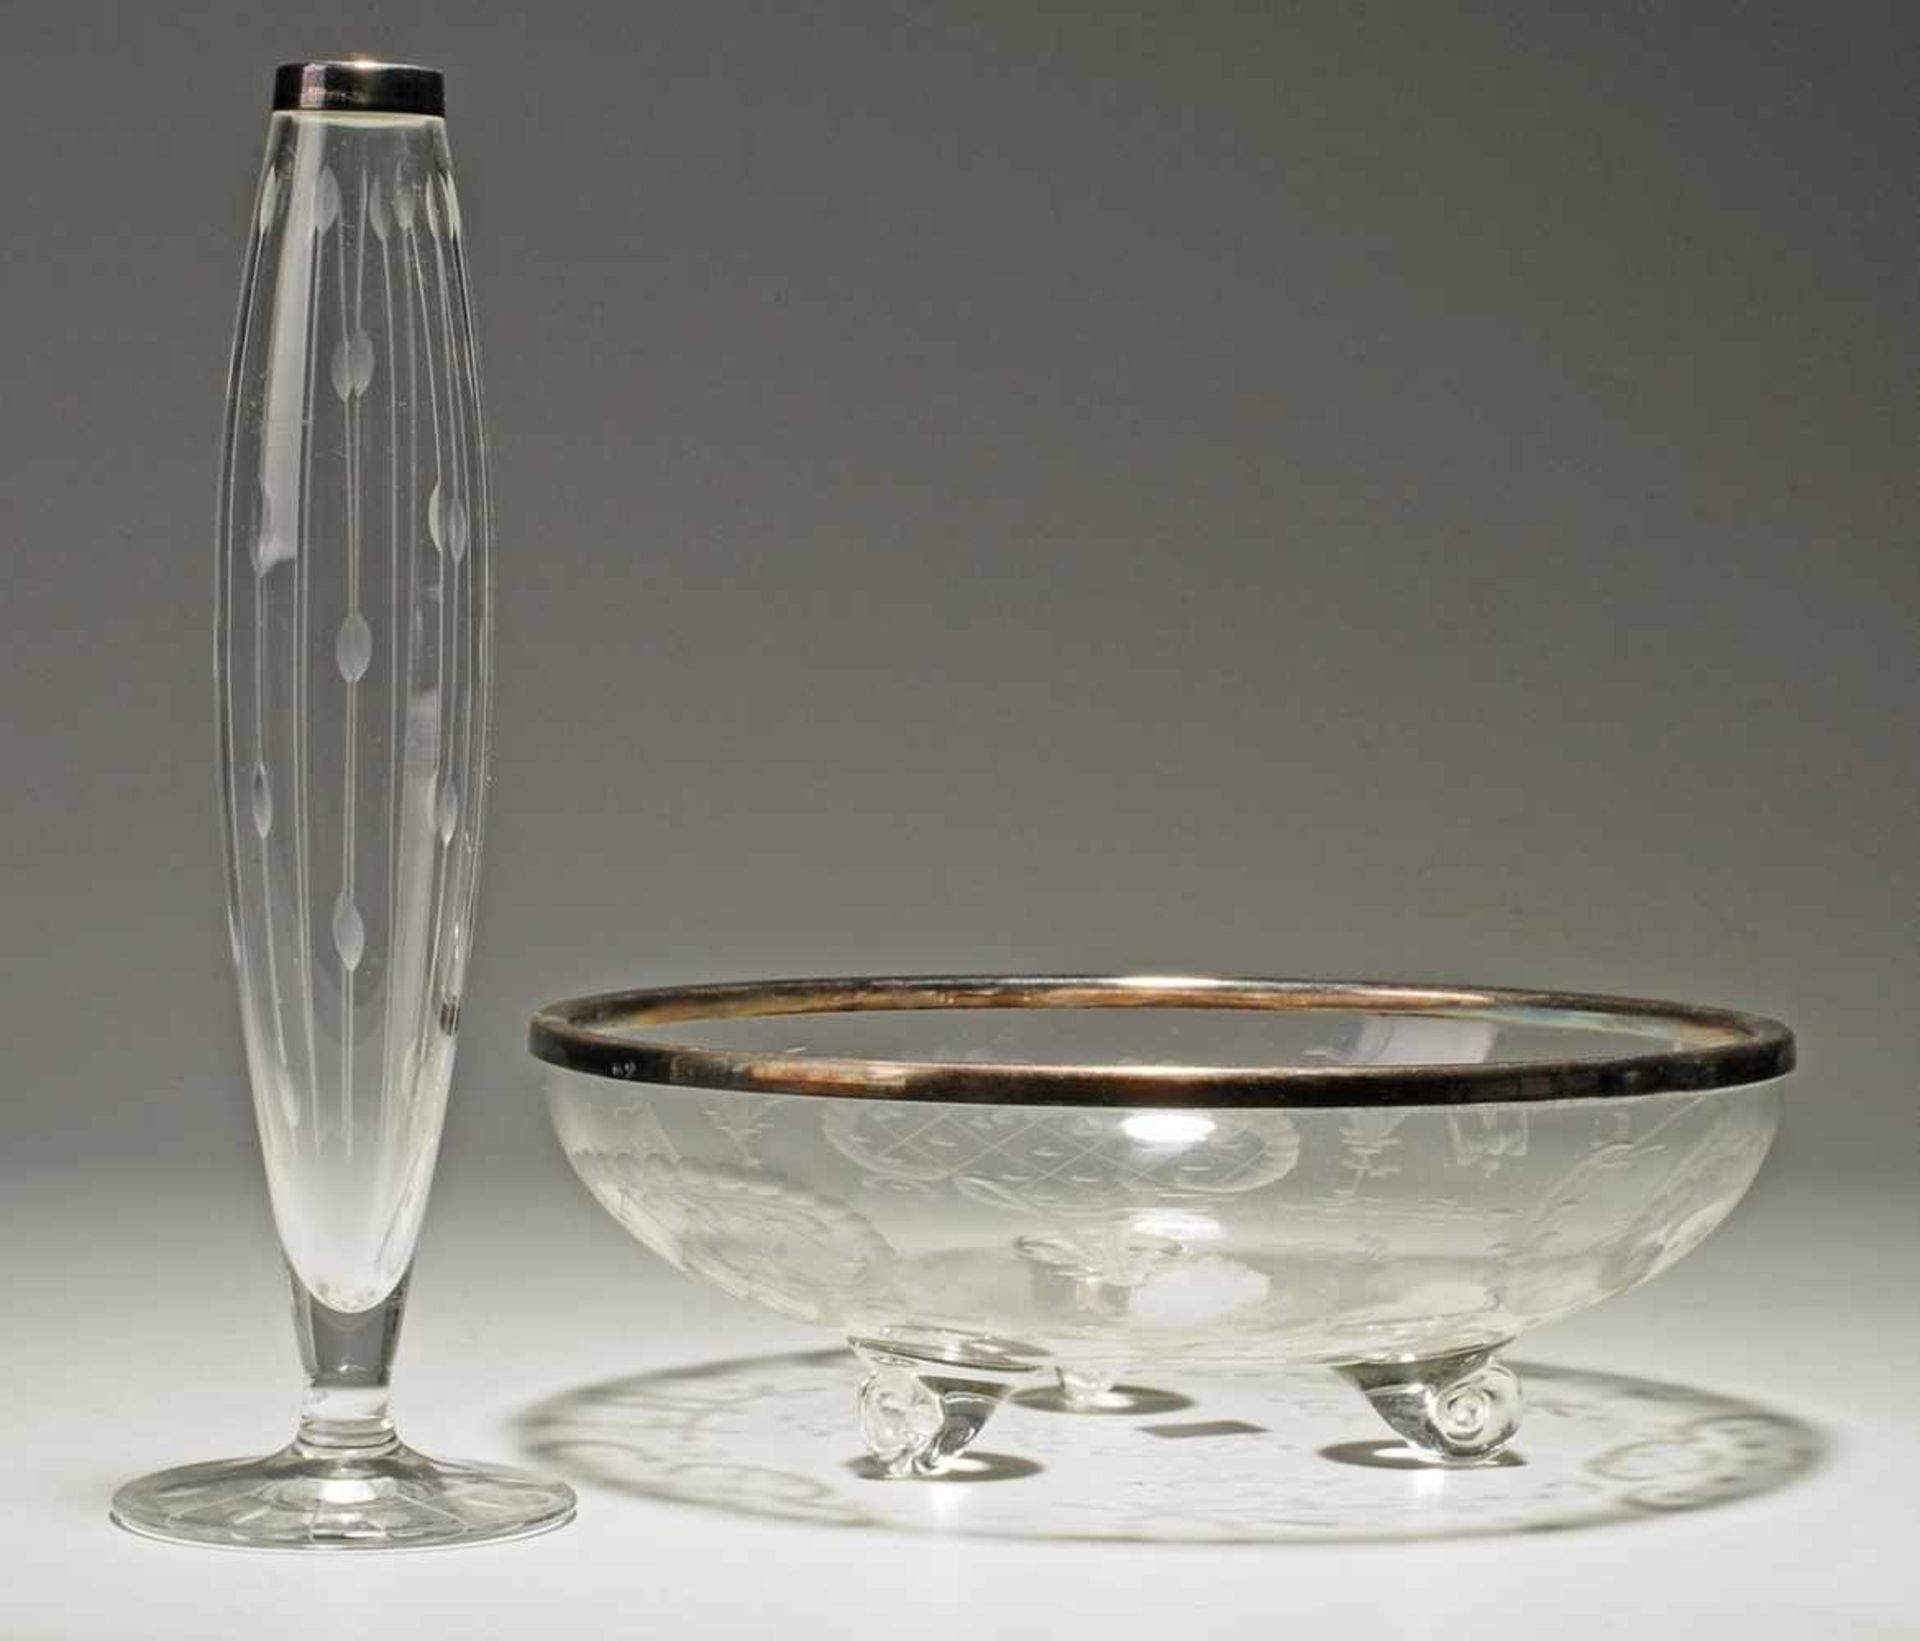 Schale und Vase mit Silbermontierung Farbloses Glas. Formgeblasen. Versch. Formen u.